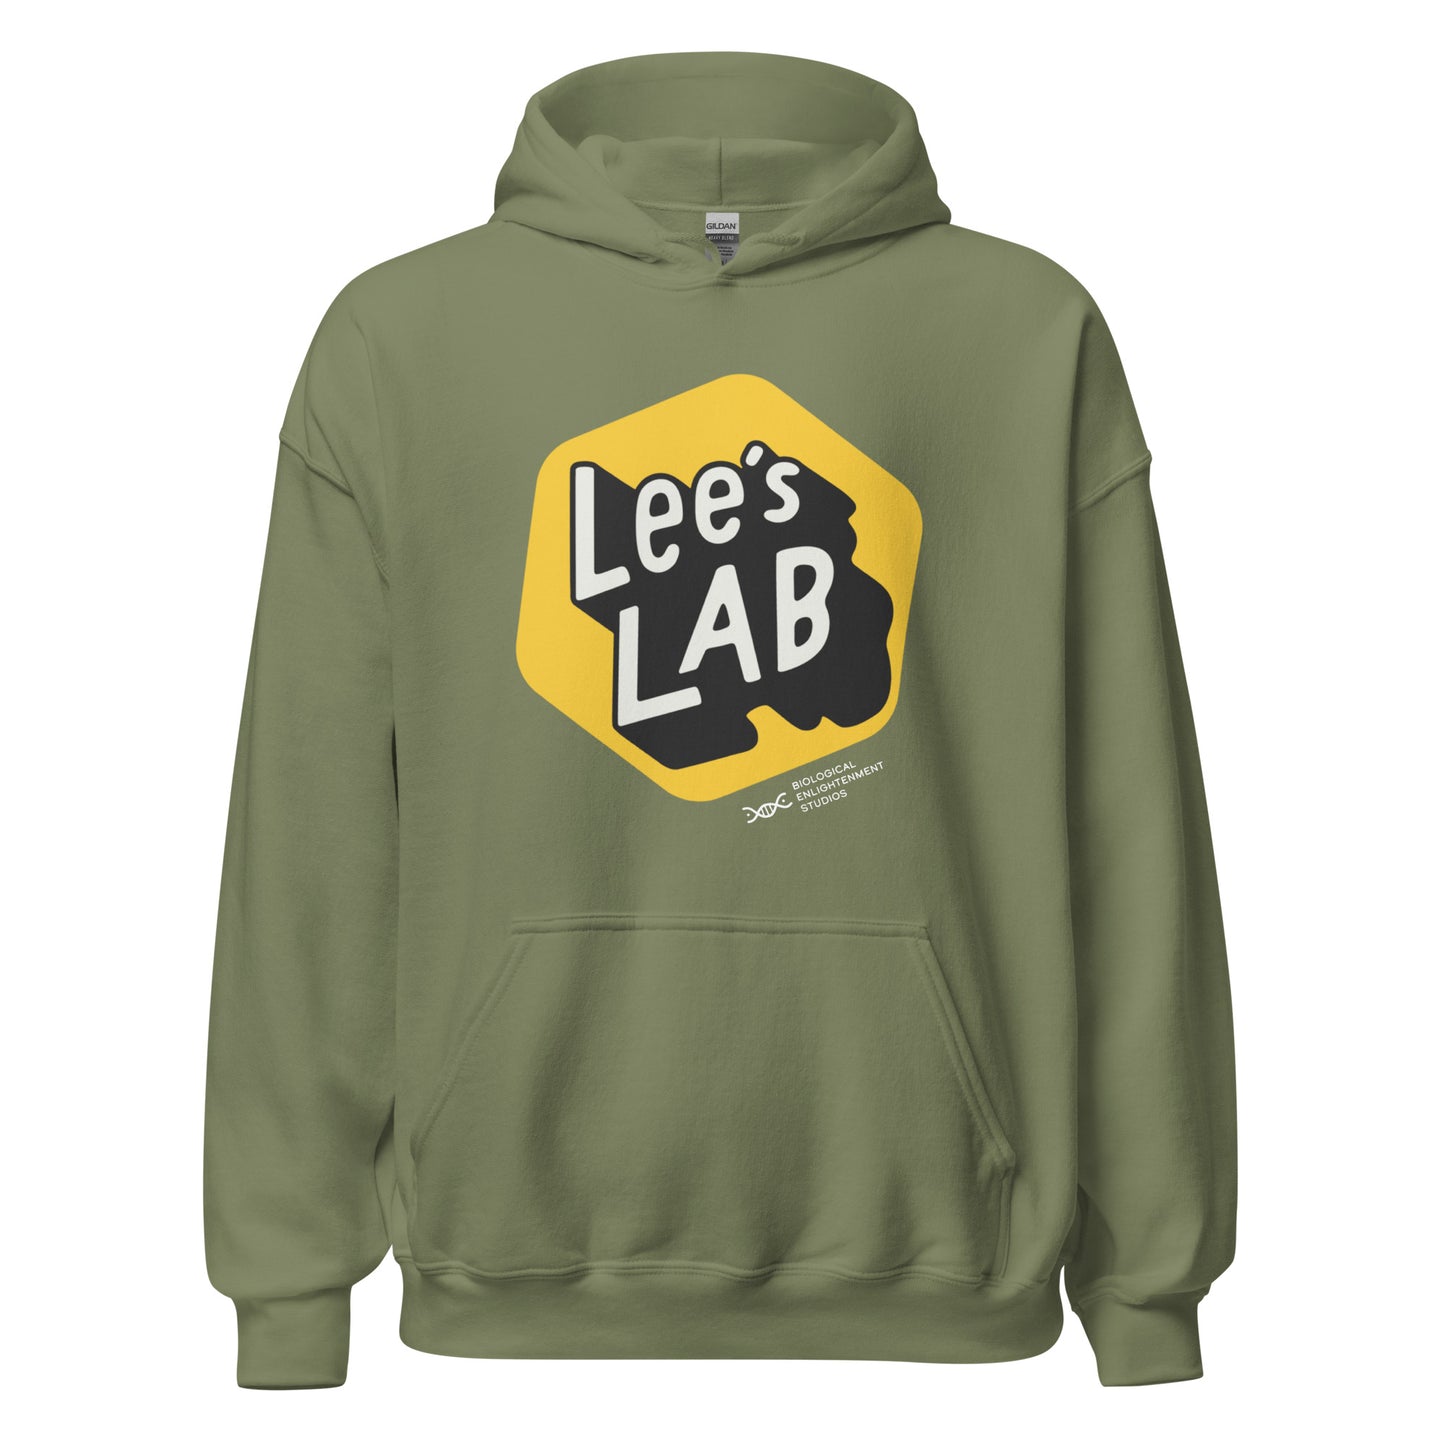 Lee's Lab Unisex Hoodie